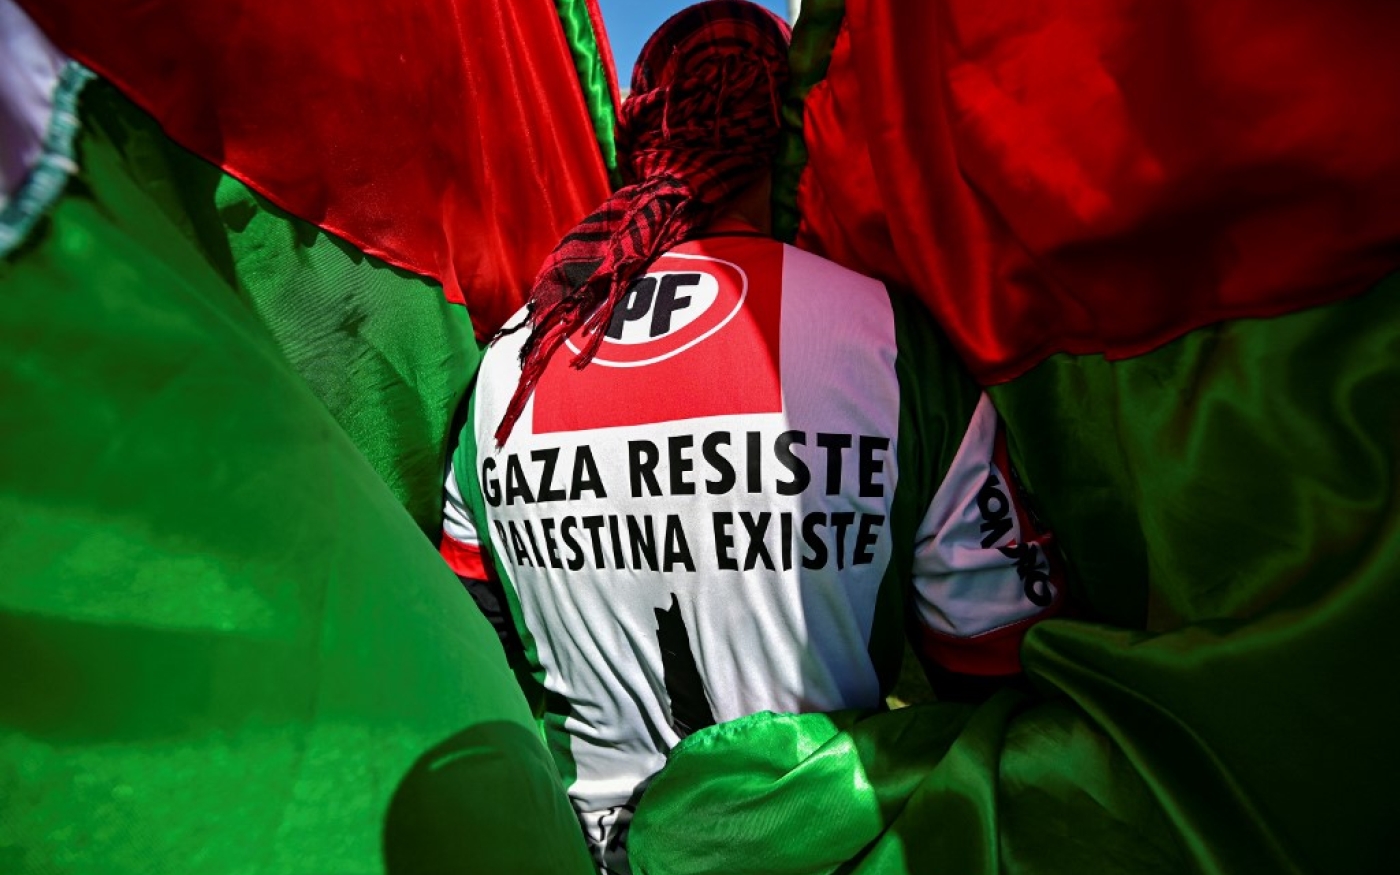 Un membre de la communauté palestinienne au Chili porte un t-shirt sur lequel on peut lire « Gaza résiste, la Palestine existe » lors d’une manifestation devant le palais de La Moneda tandis que l’ambassadeur d’Israël au Chili, Gil Artzyeli, présente ses lettres de créance au président du Chili Gabriel Boric à Santiago (AFP/Martin Bernetti)